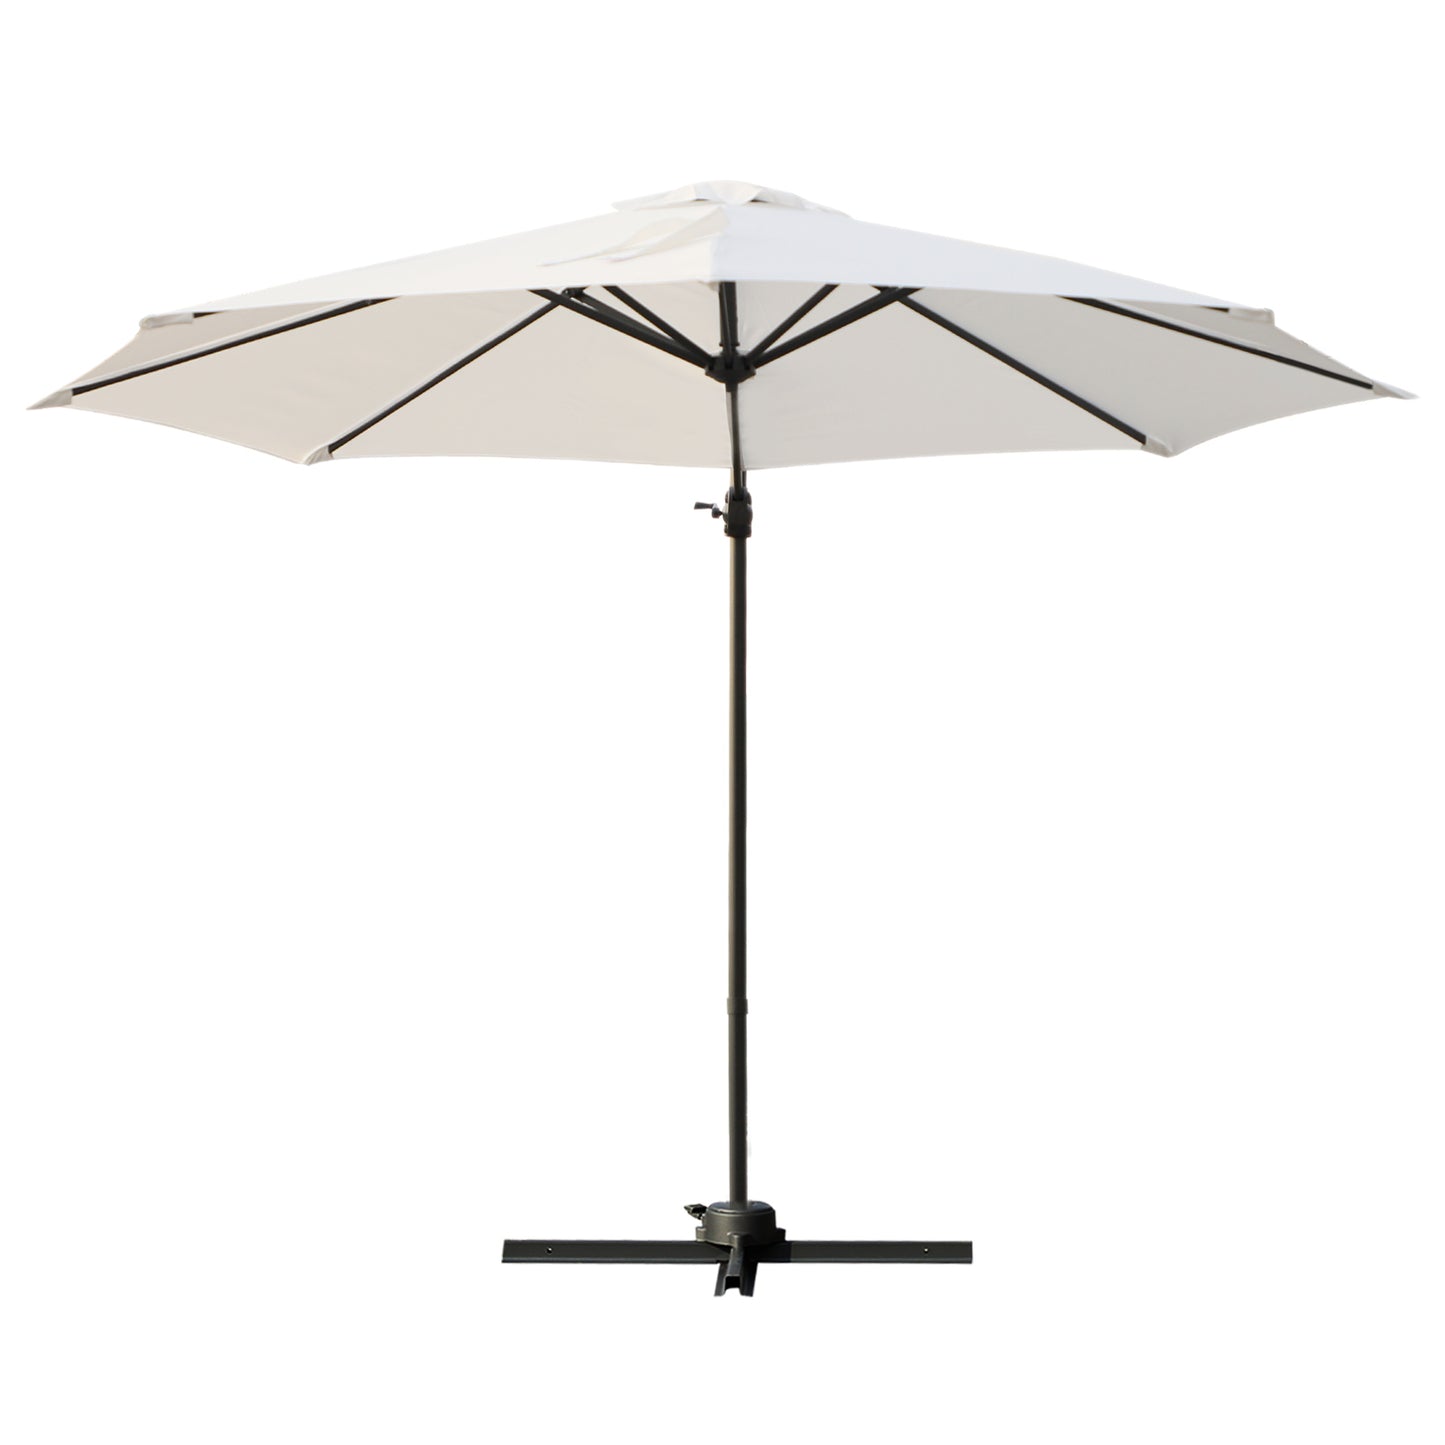 Outsunny Patio Roma Parasol Cantilever Hanging Sun Shade Umbrella Cream White